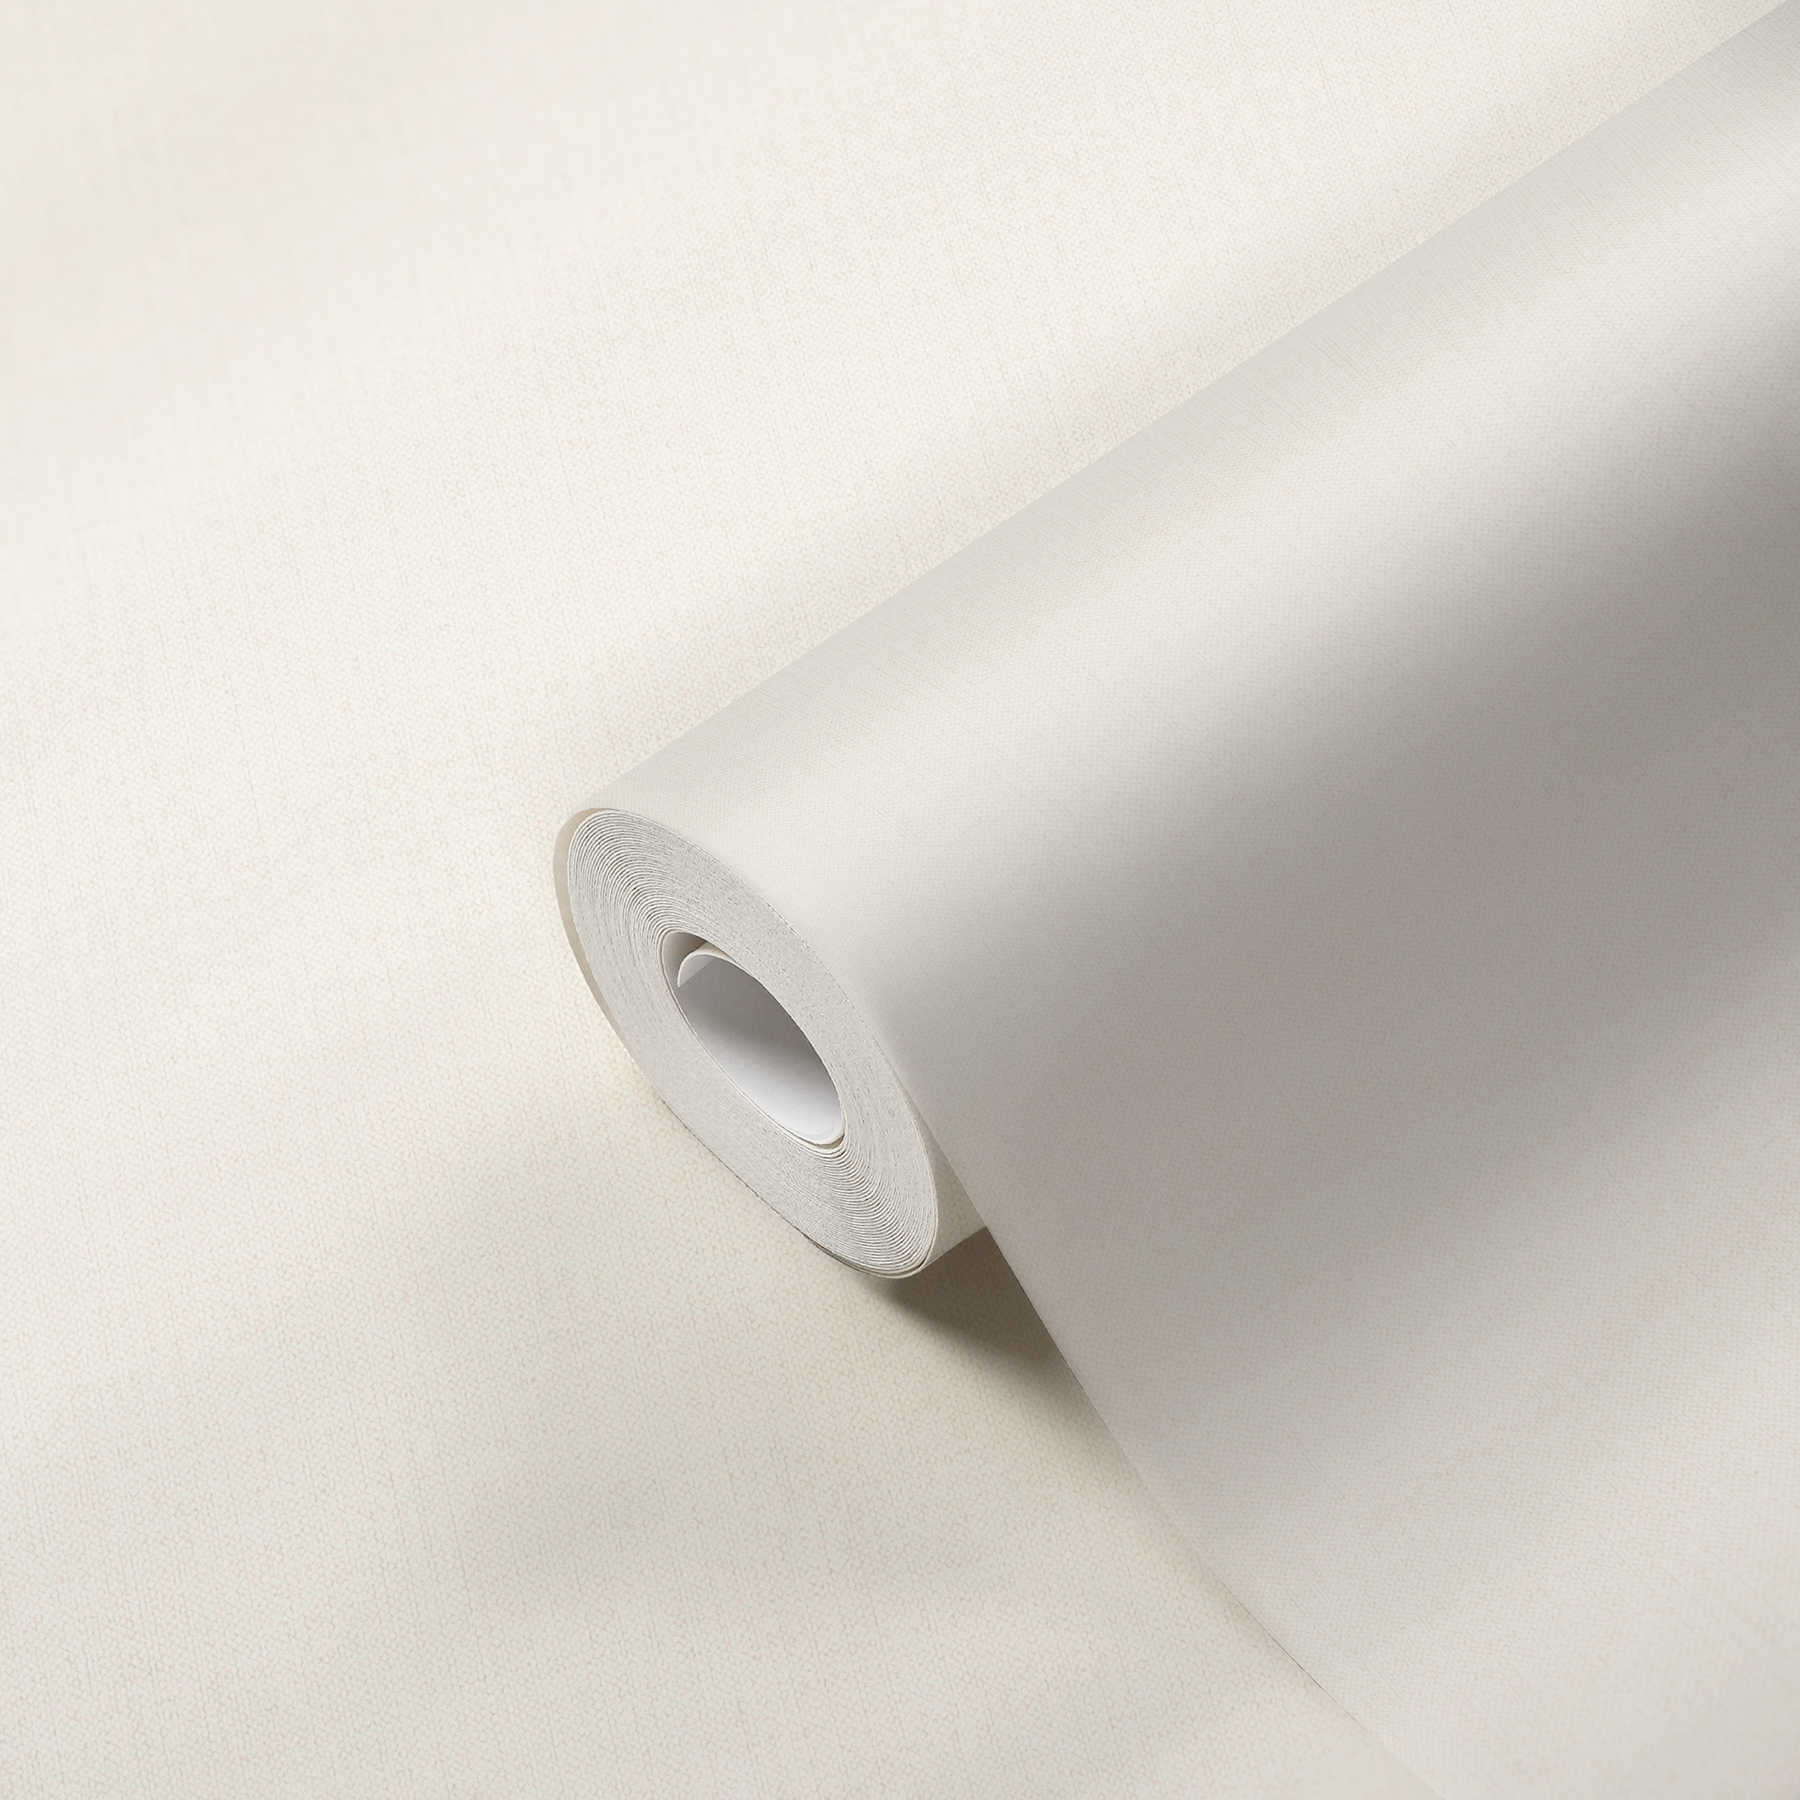             Papel pintado no tejido de aspecto textil blanco mate con textura de tela
        